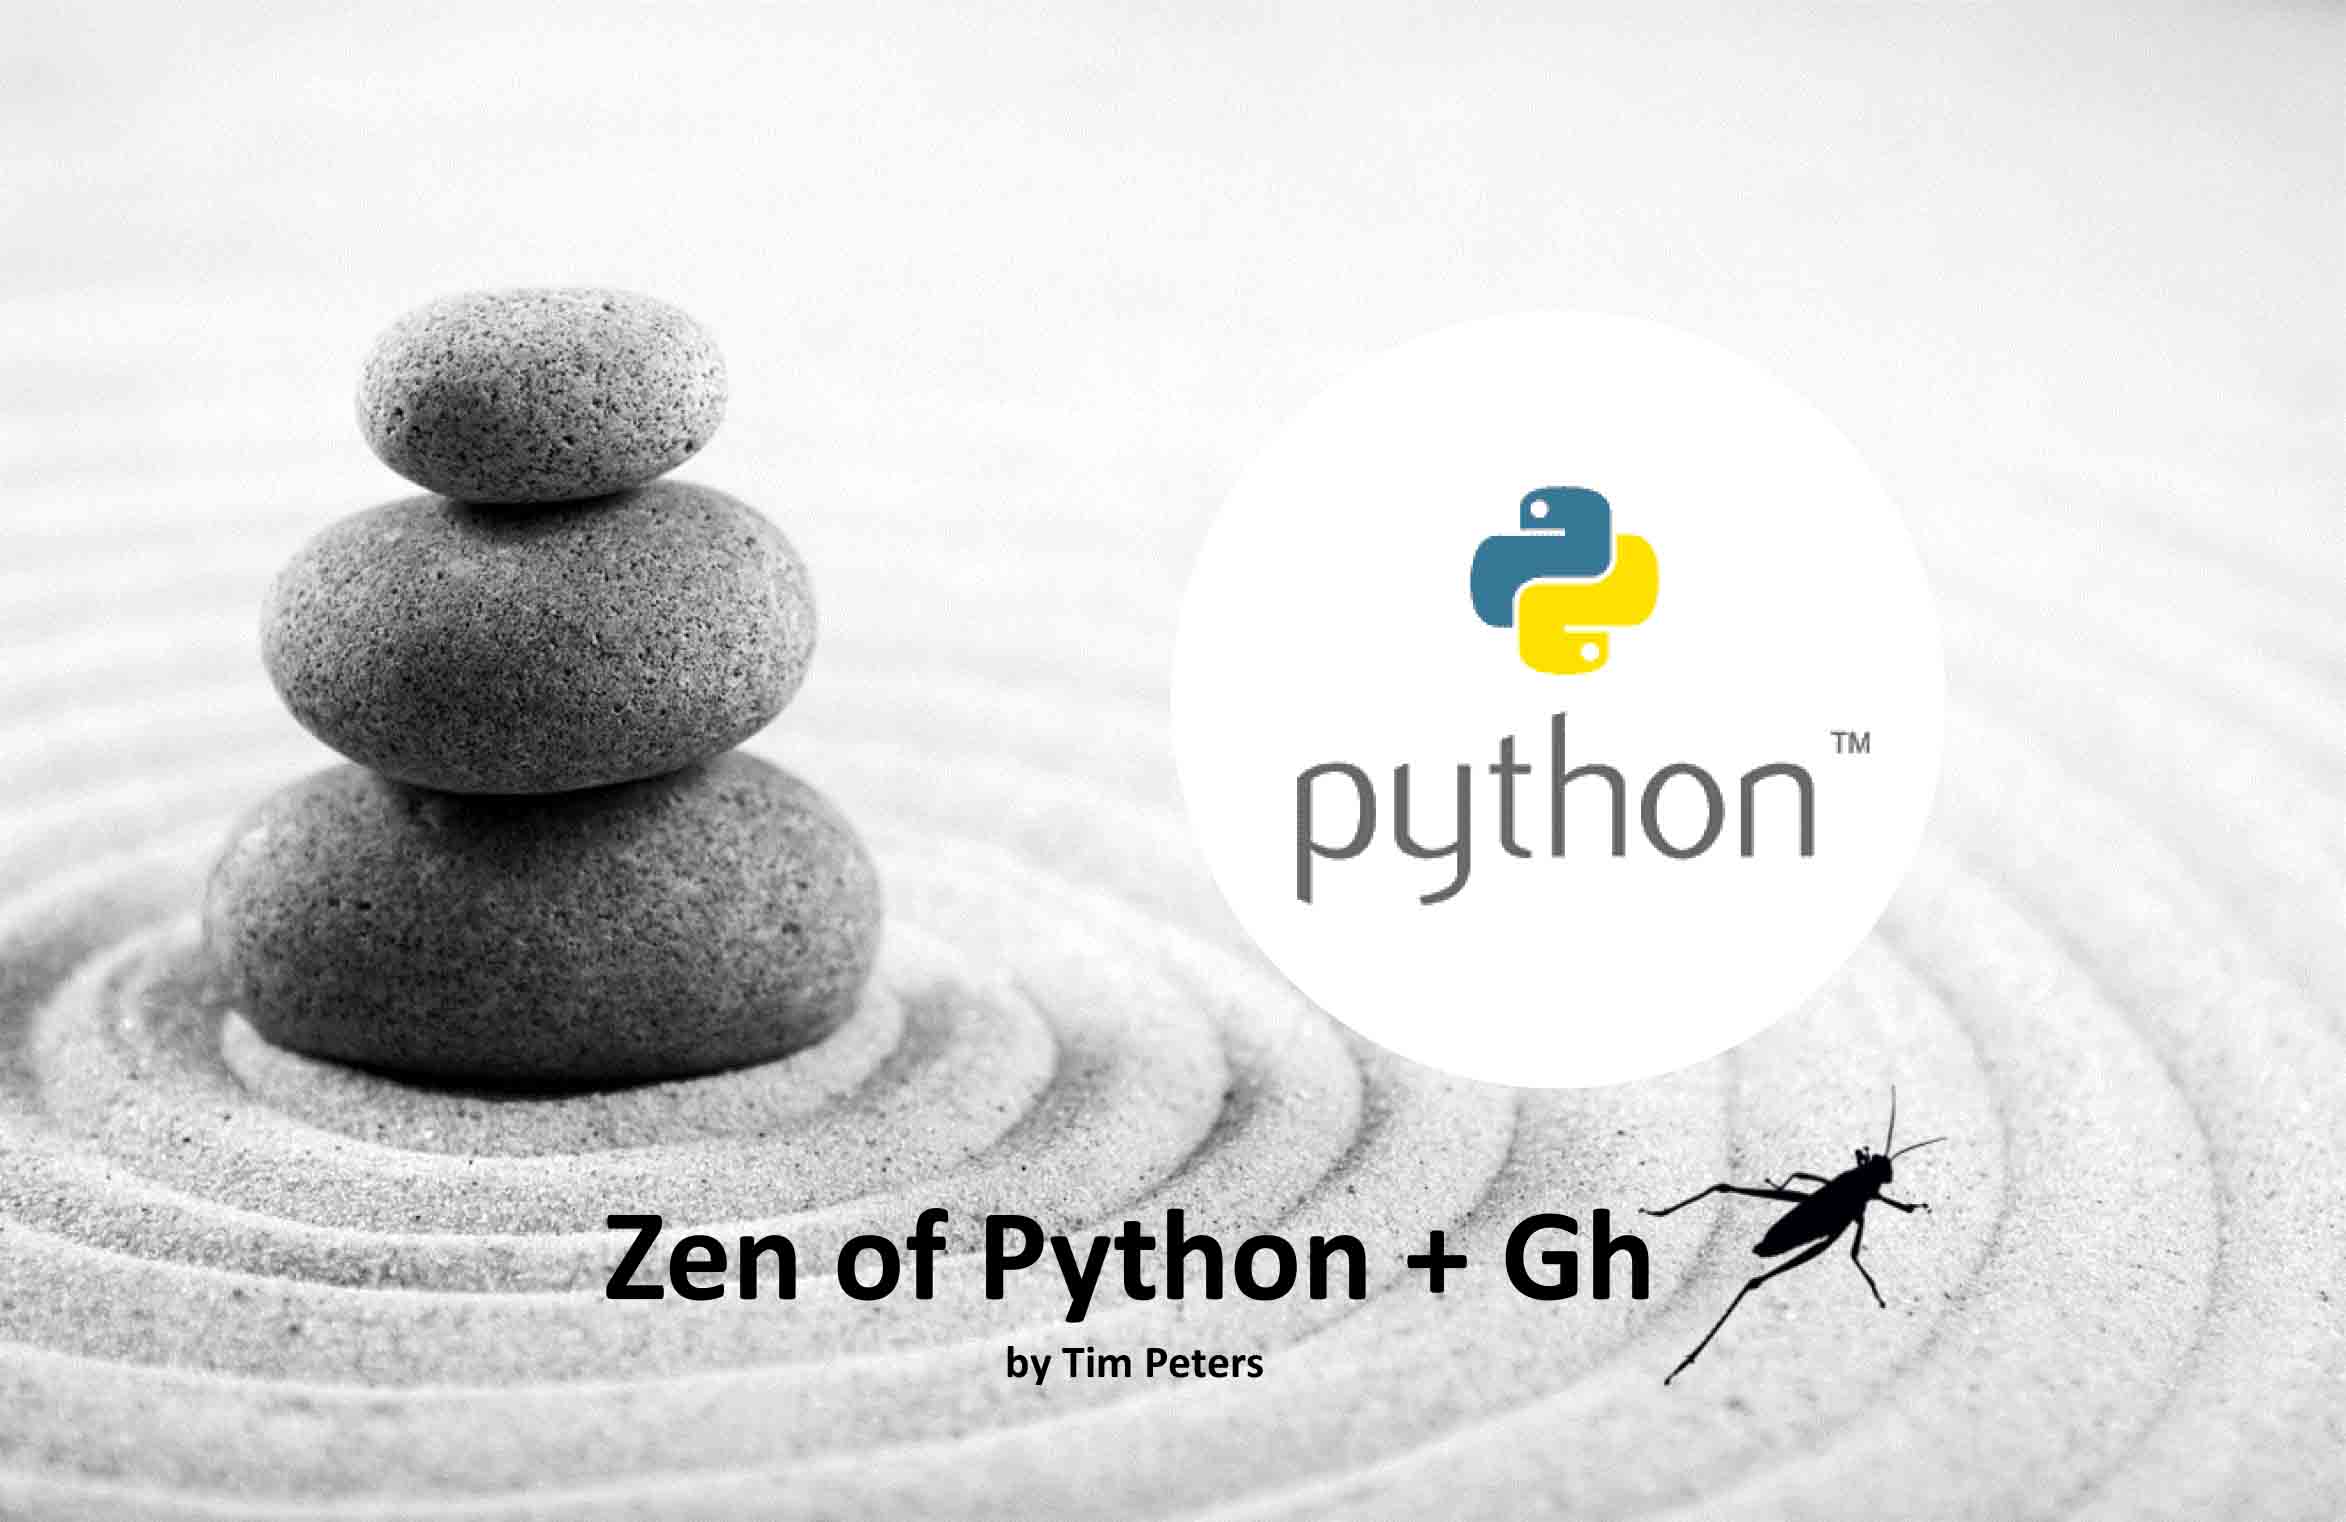 Zen of Python + Gh